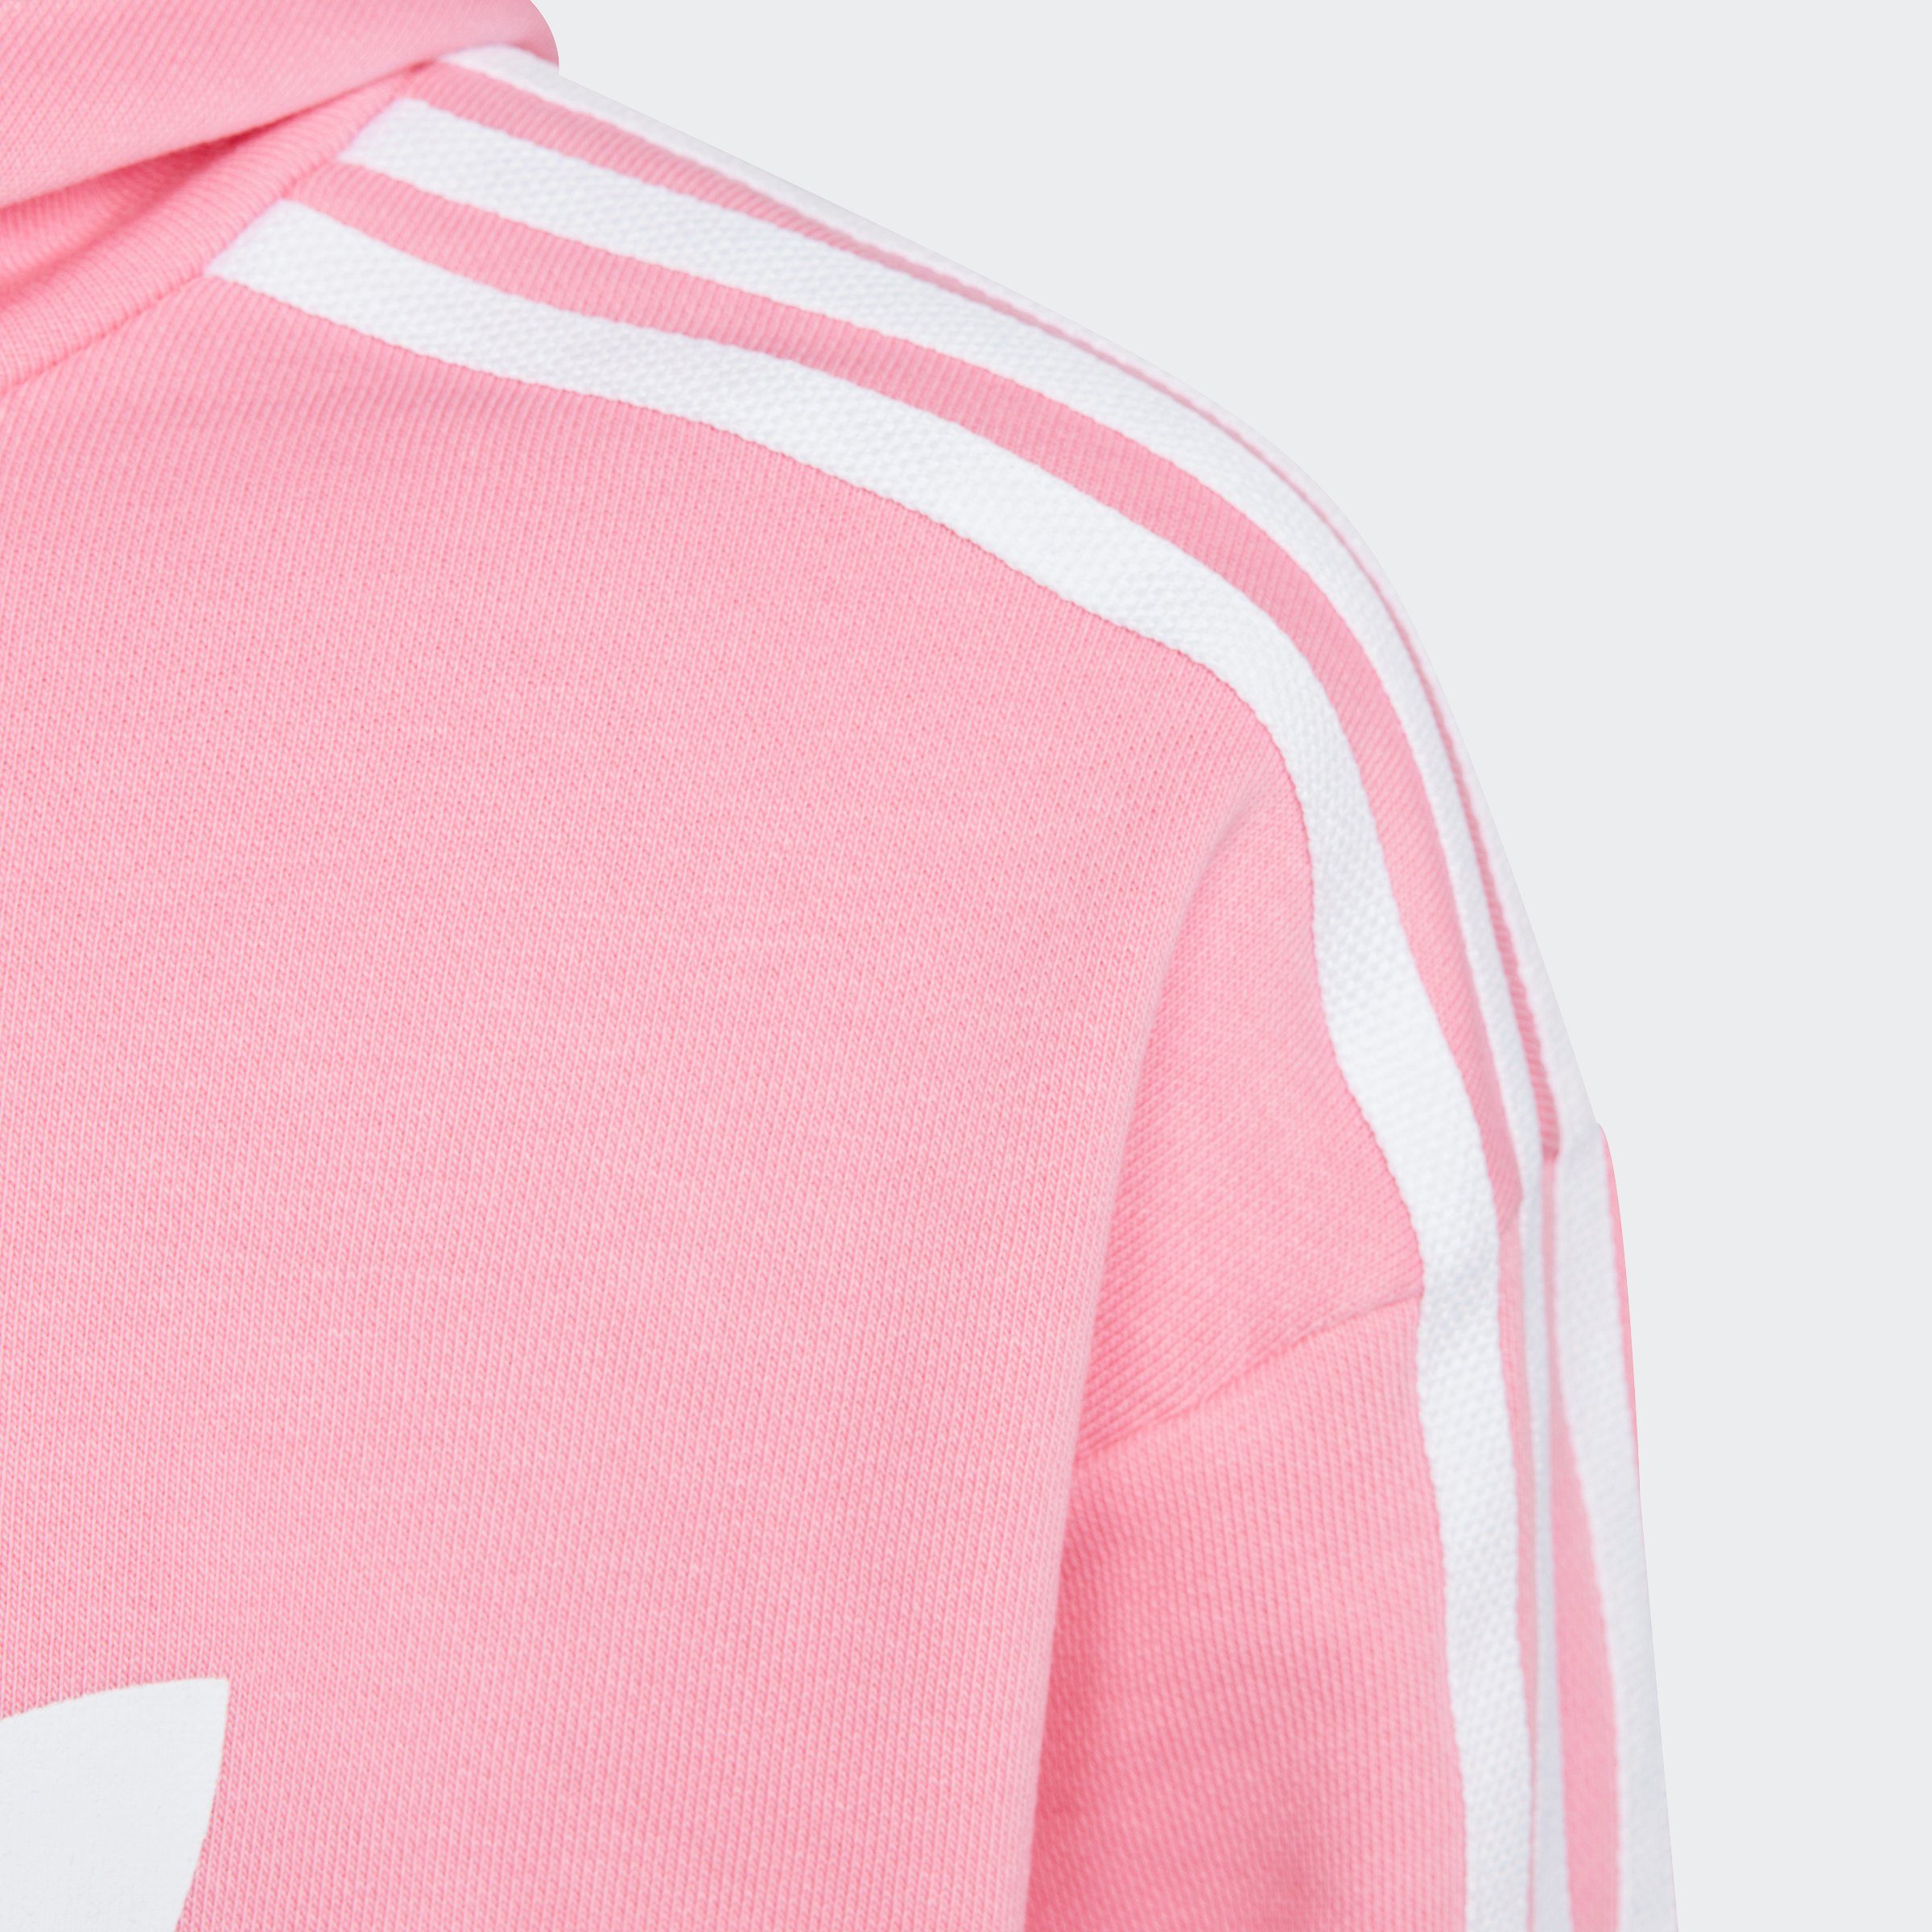 ADICOLOR CROPPED Originals adidas Pink Bliss HOODIE Sweatshirt